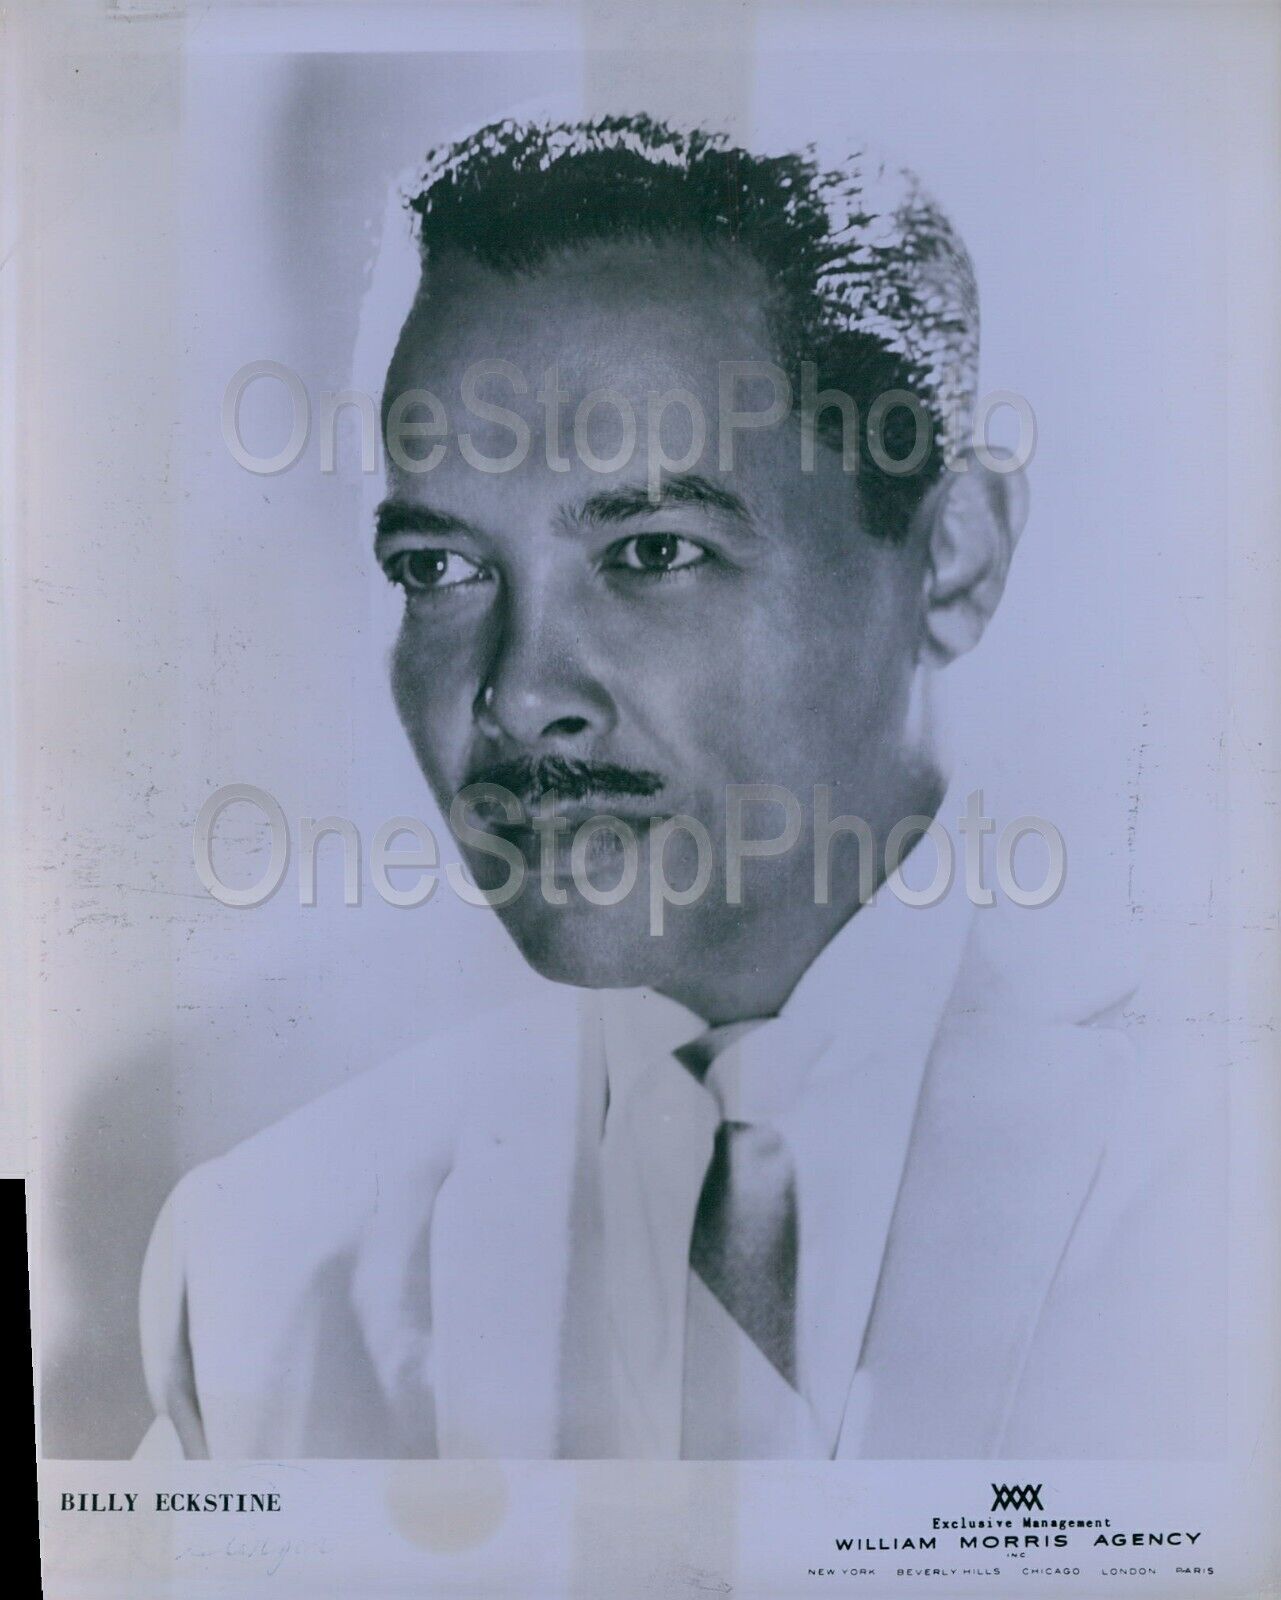 1957 Billy Eckstine legendary singer Press Photo